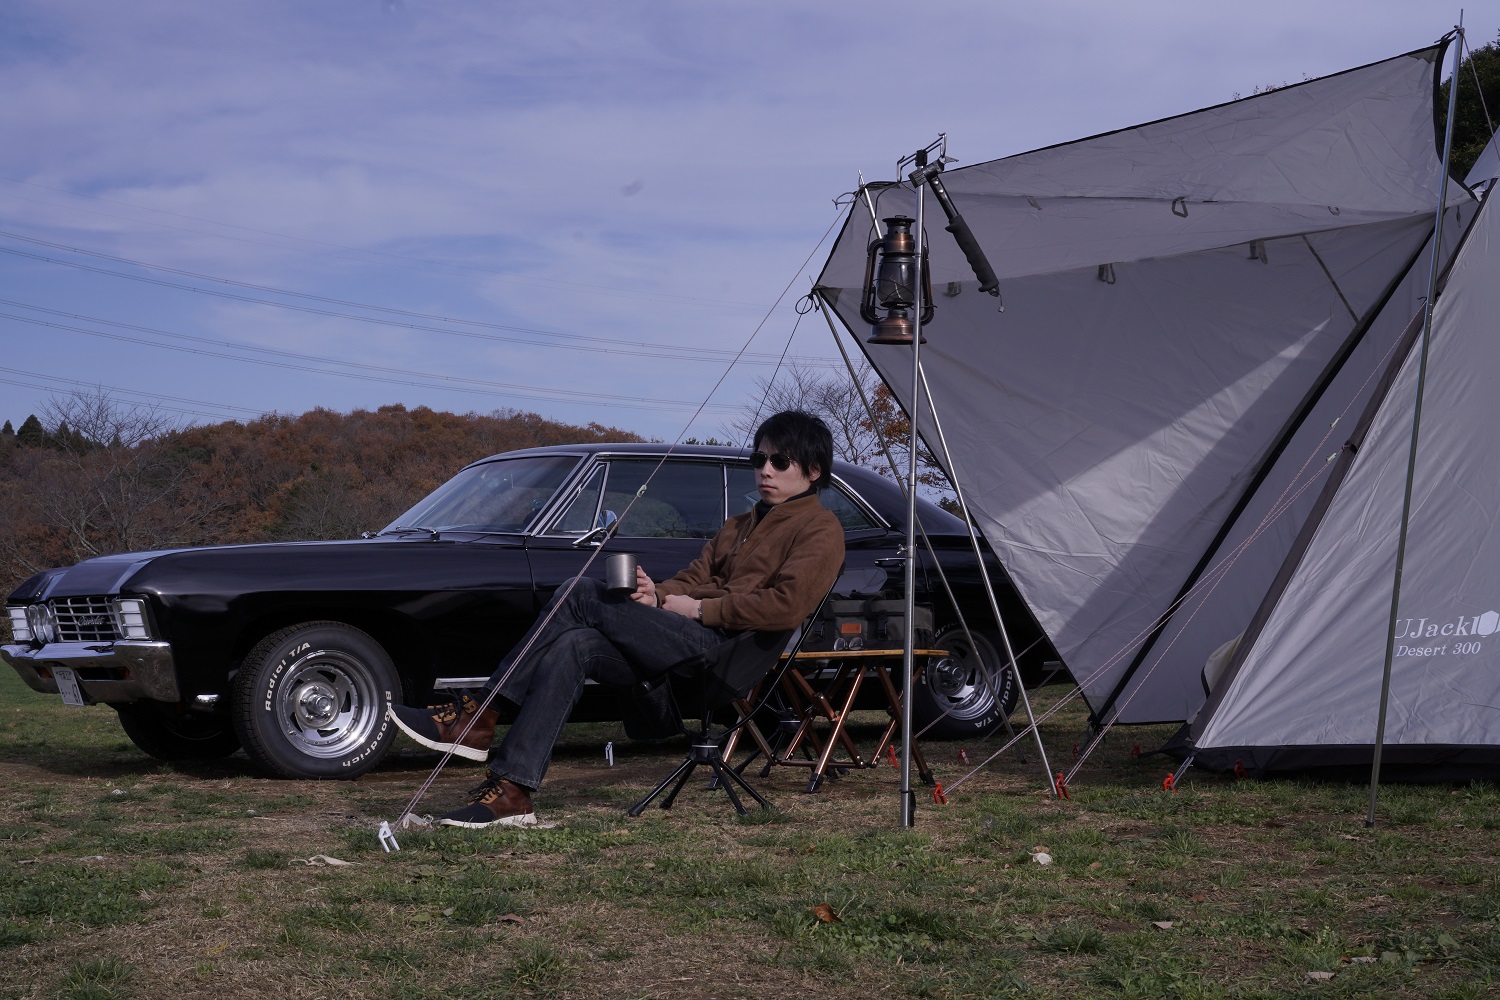 遂にインパラキャンプが始動 成田ゆめ牧場ファミリーオートキャンプ場でソロキャンプをしてきた Impala Camp インパラキャンプ 車 を個人輸入するところから始まるujack社長のキャンプブログ